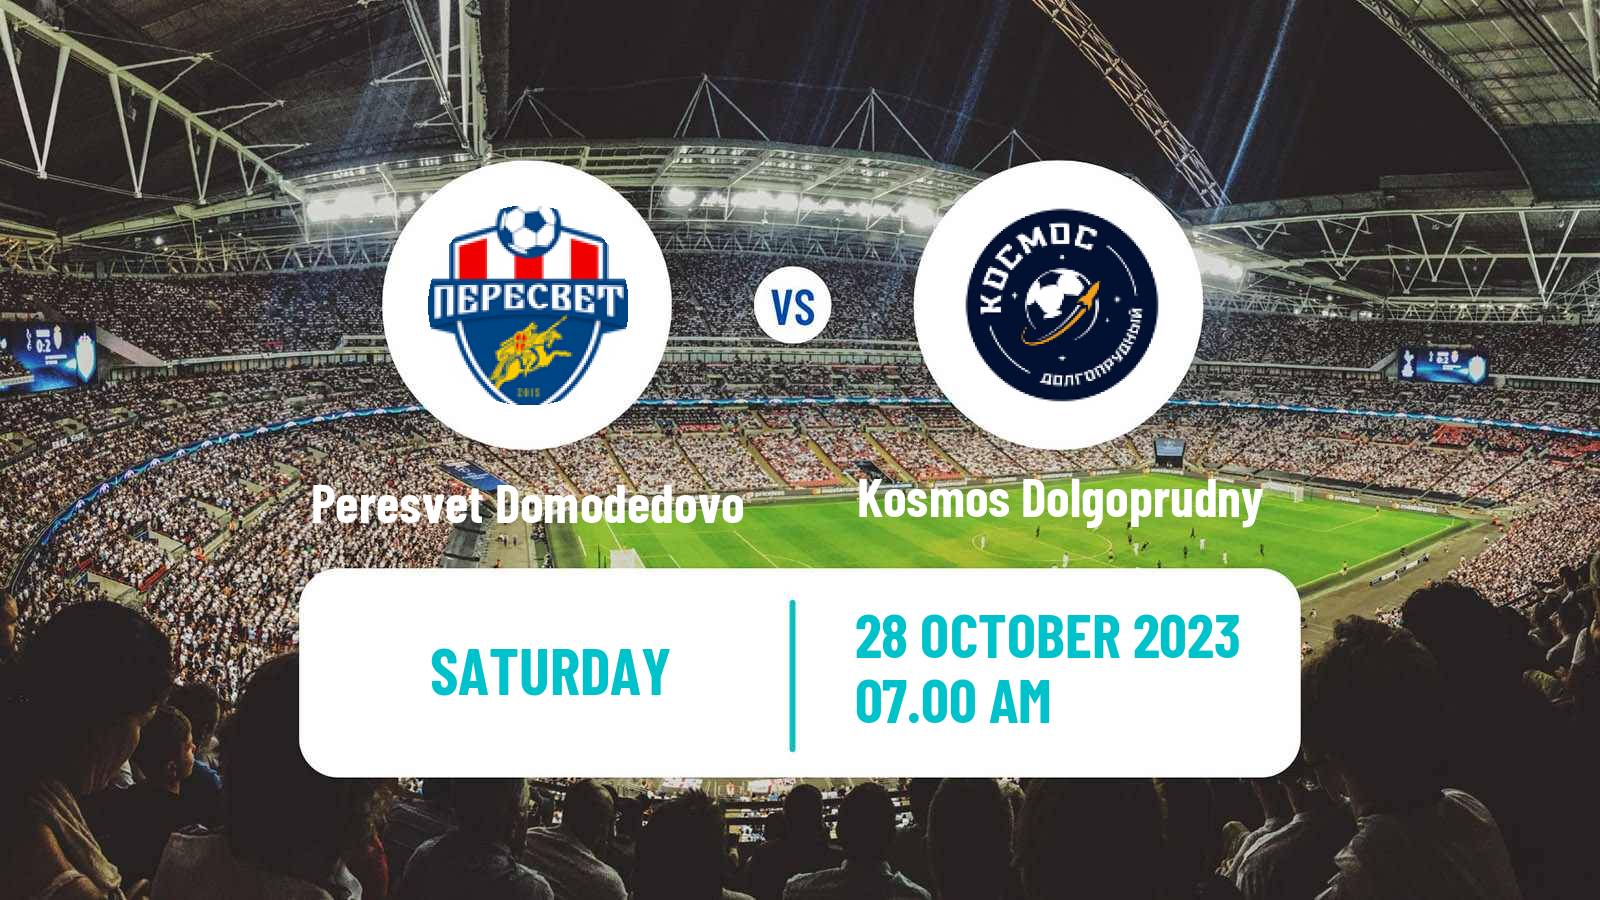 Soccer FNL 2 Division B Group 3 Peresvet Domodedovo - Kosmos Dolgoprudny